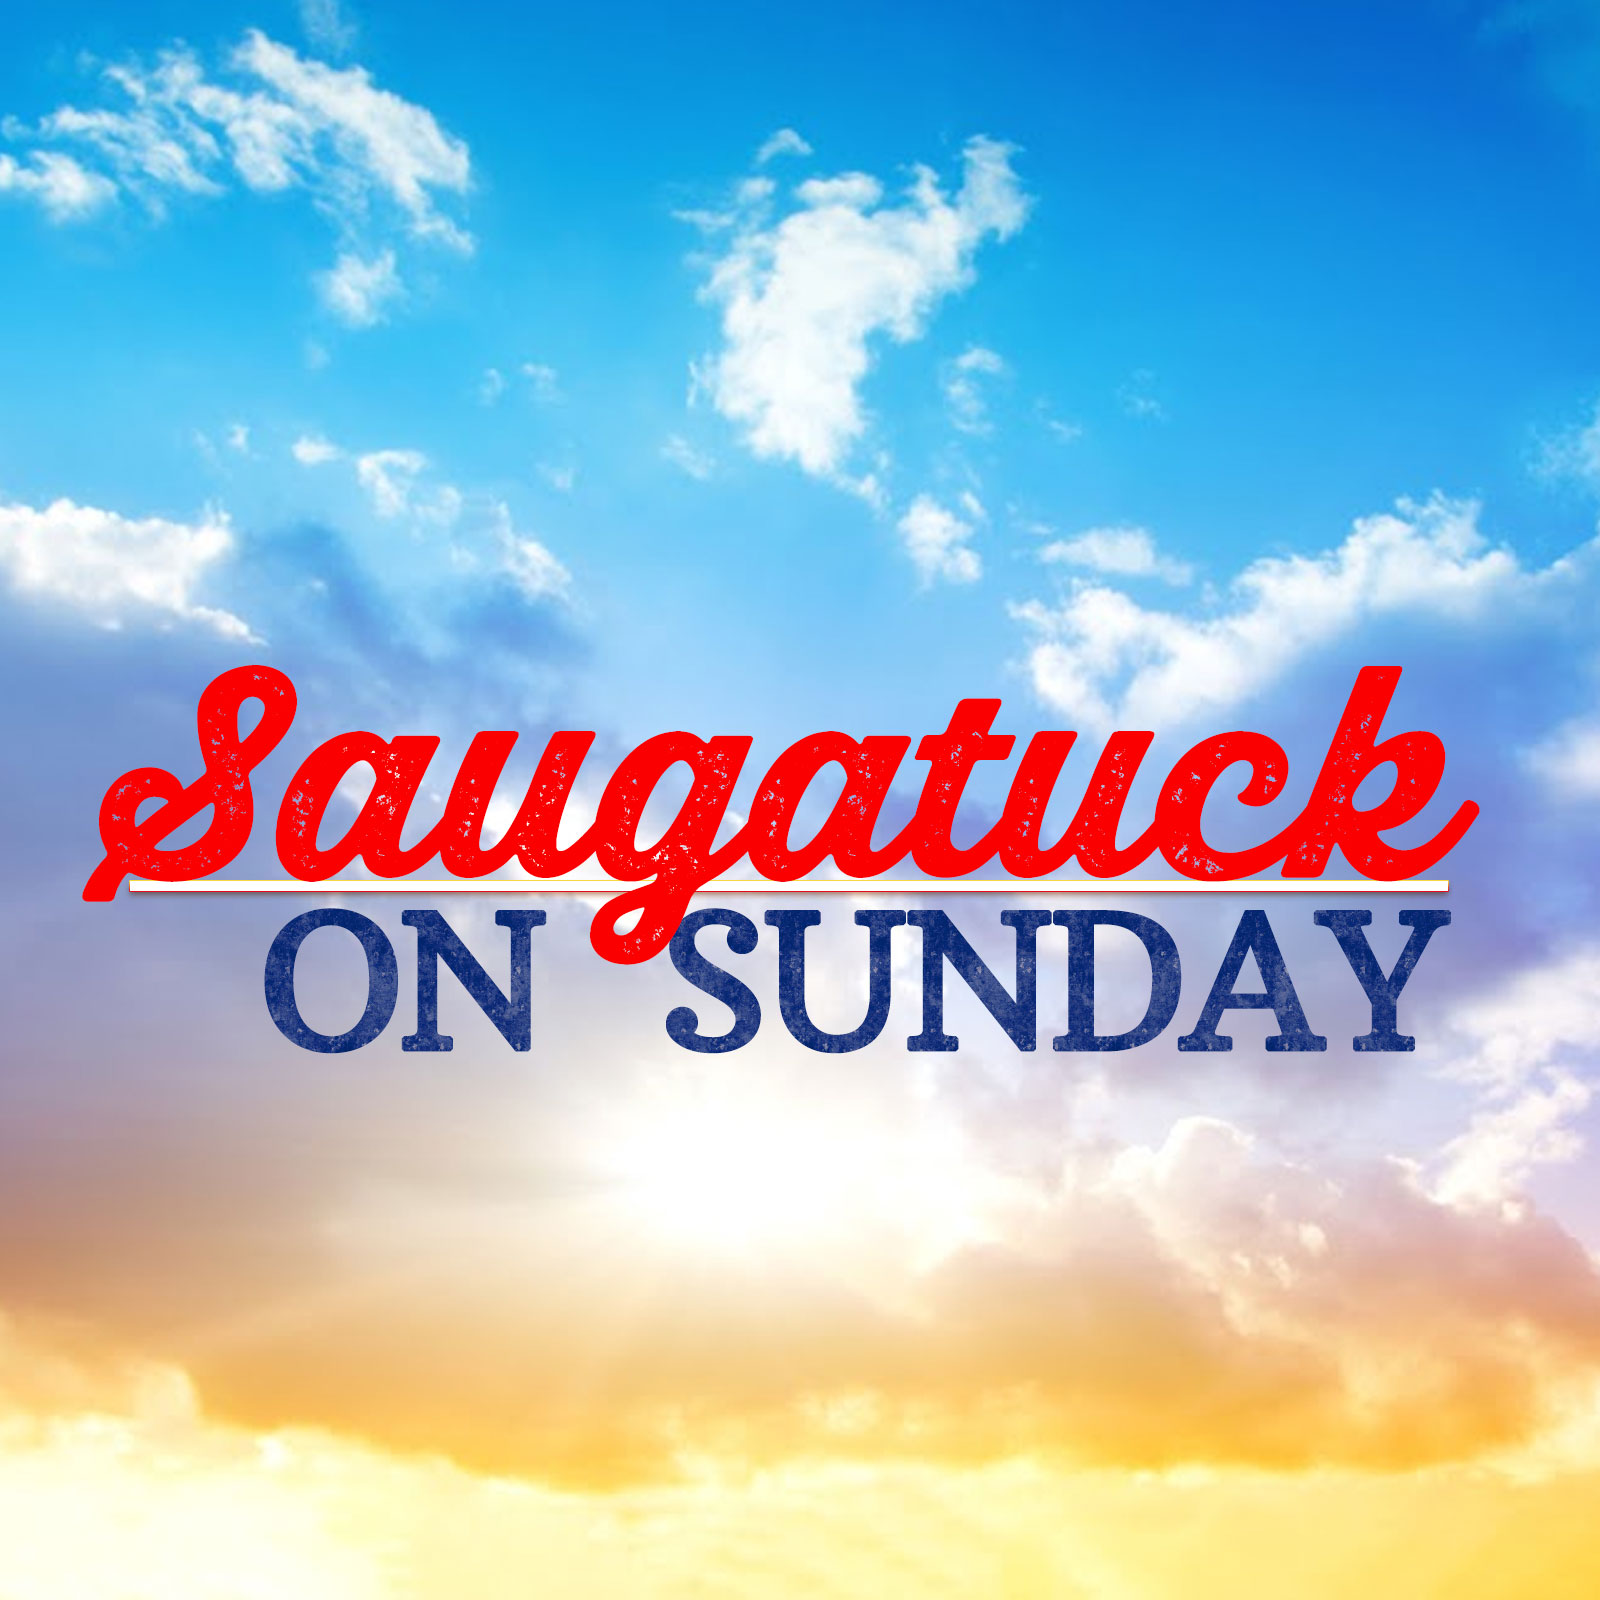 Saugatuck on Sunday 08-14-22